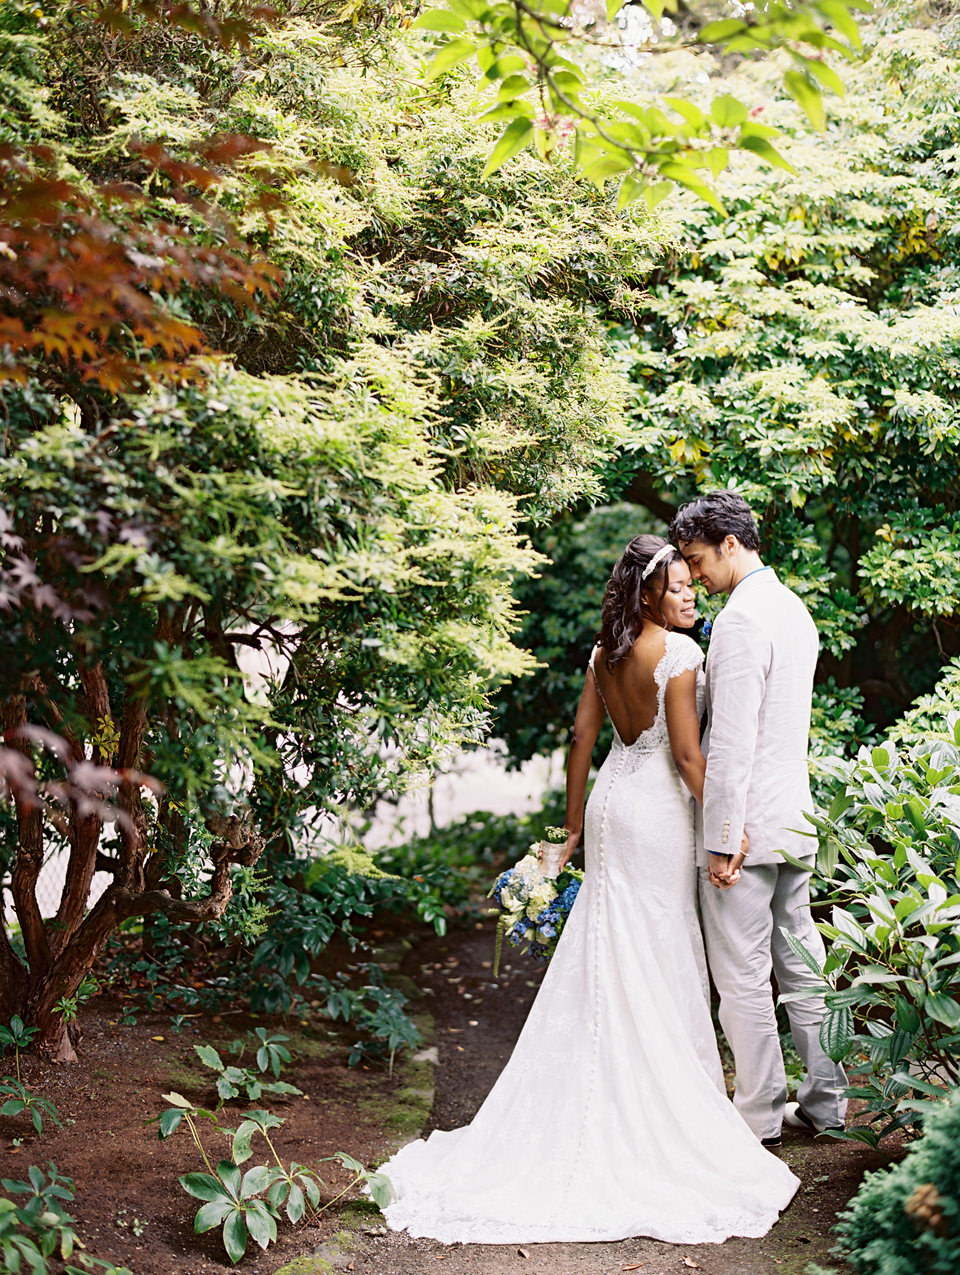 Seattle wedding photographer: An Intimate Queen Anne garden wedding at Parsons Gardens, Seattle (19)